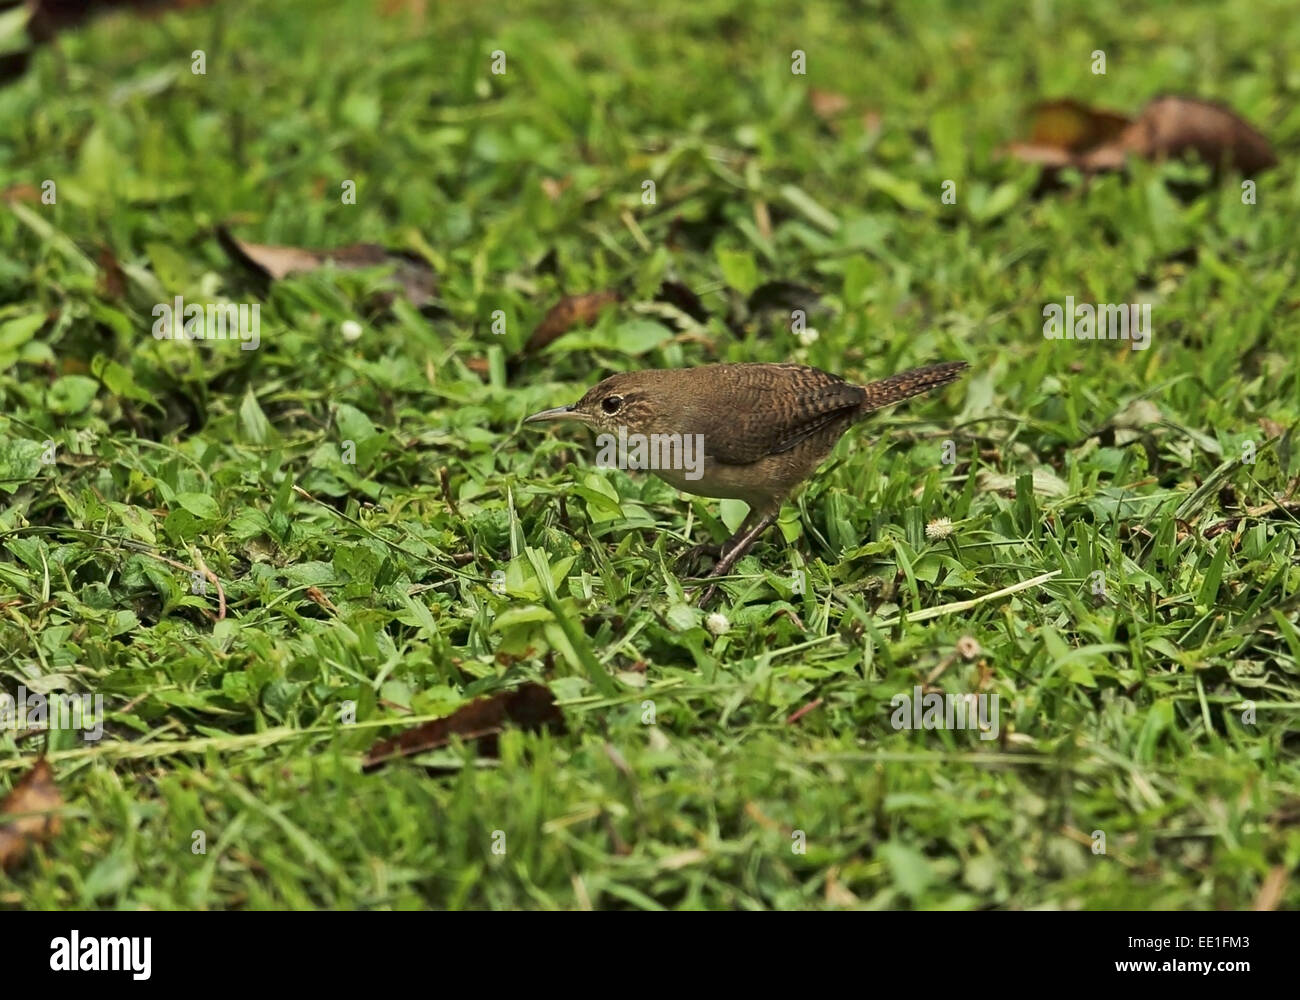 Südlichen Haus Zaunkönig (Troglodytes Musculus Inquietus) Erwachsenen, auf Nahrungssuche am Boden, bei Regen, Chagres River, Panama, November Stockfoto